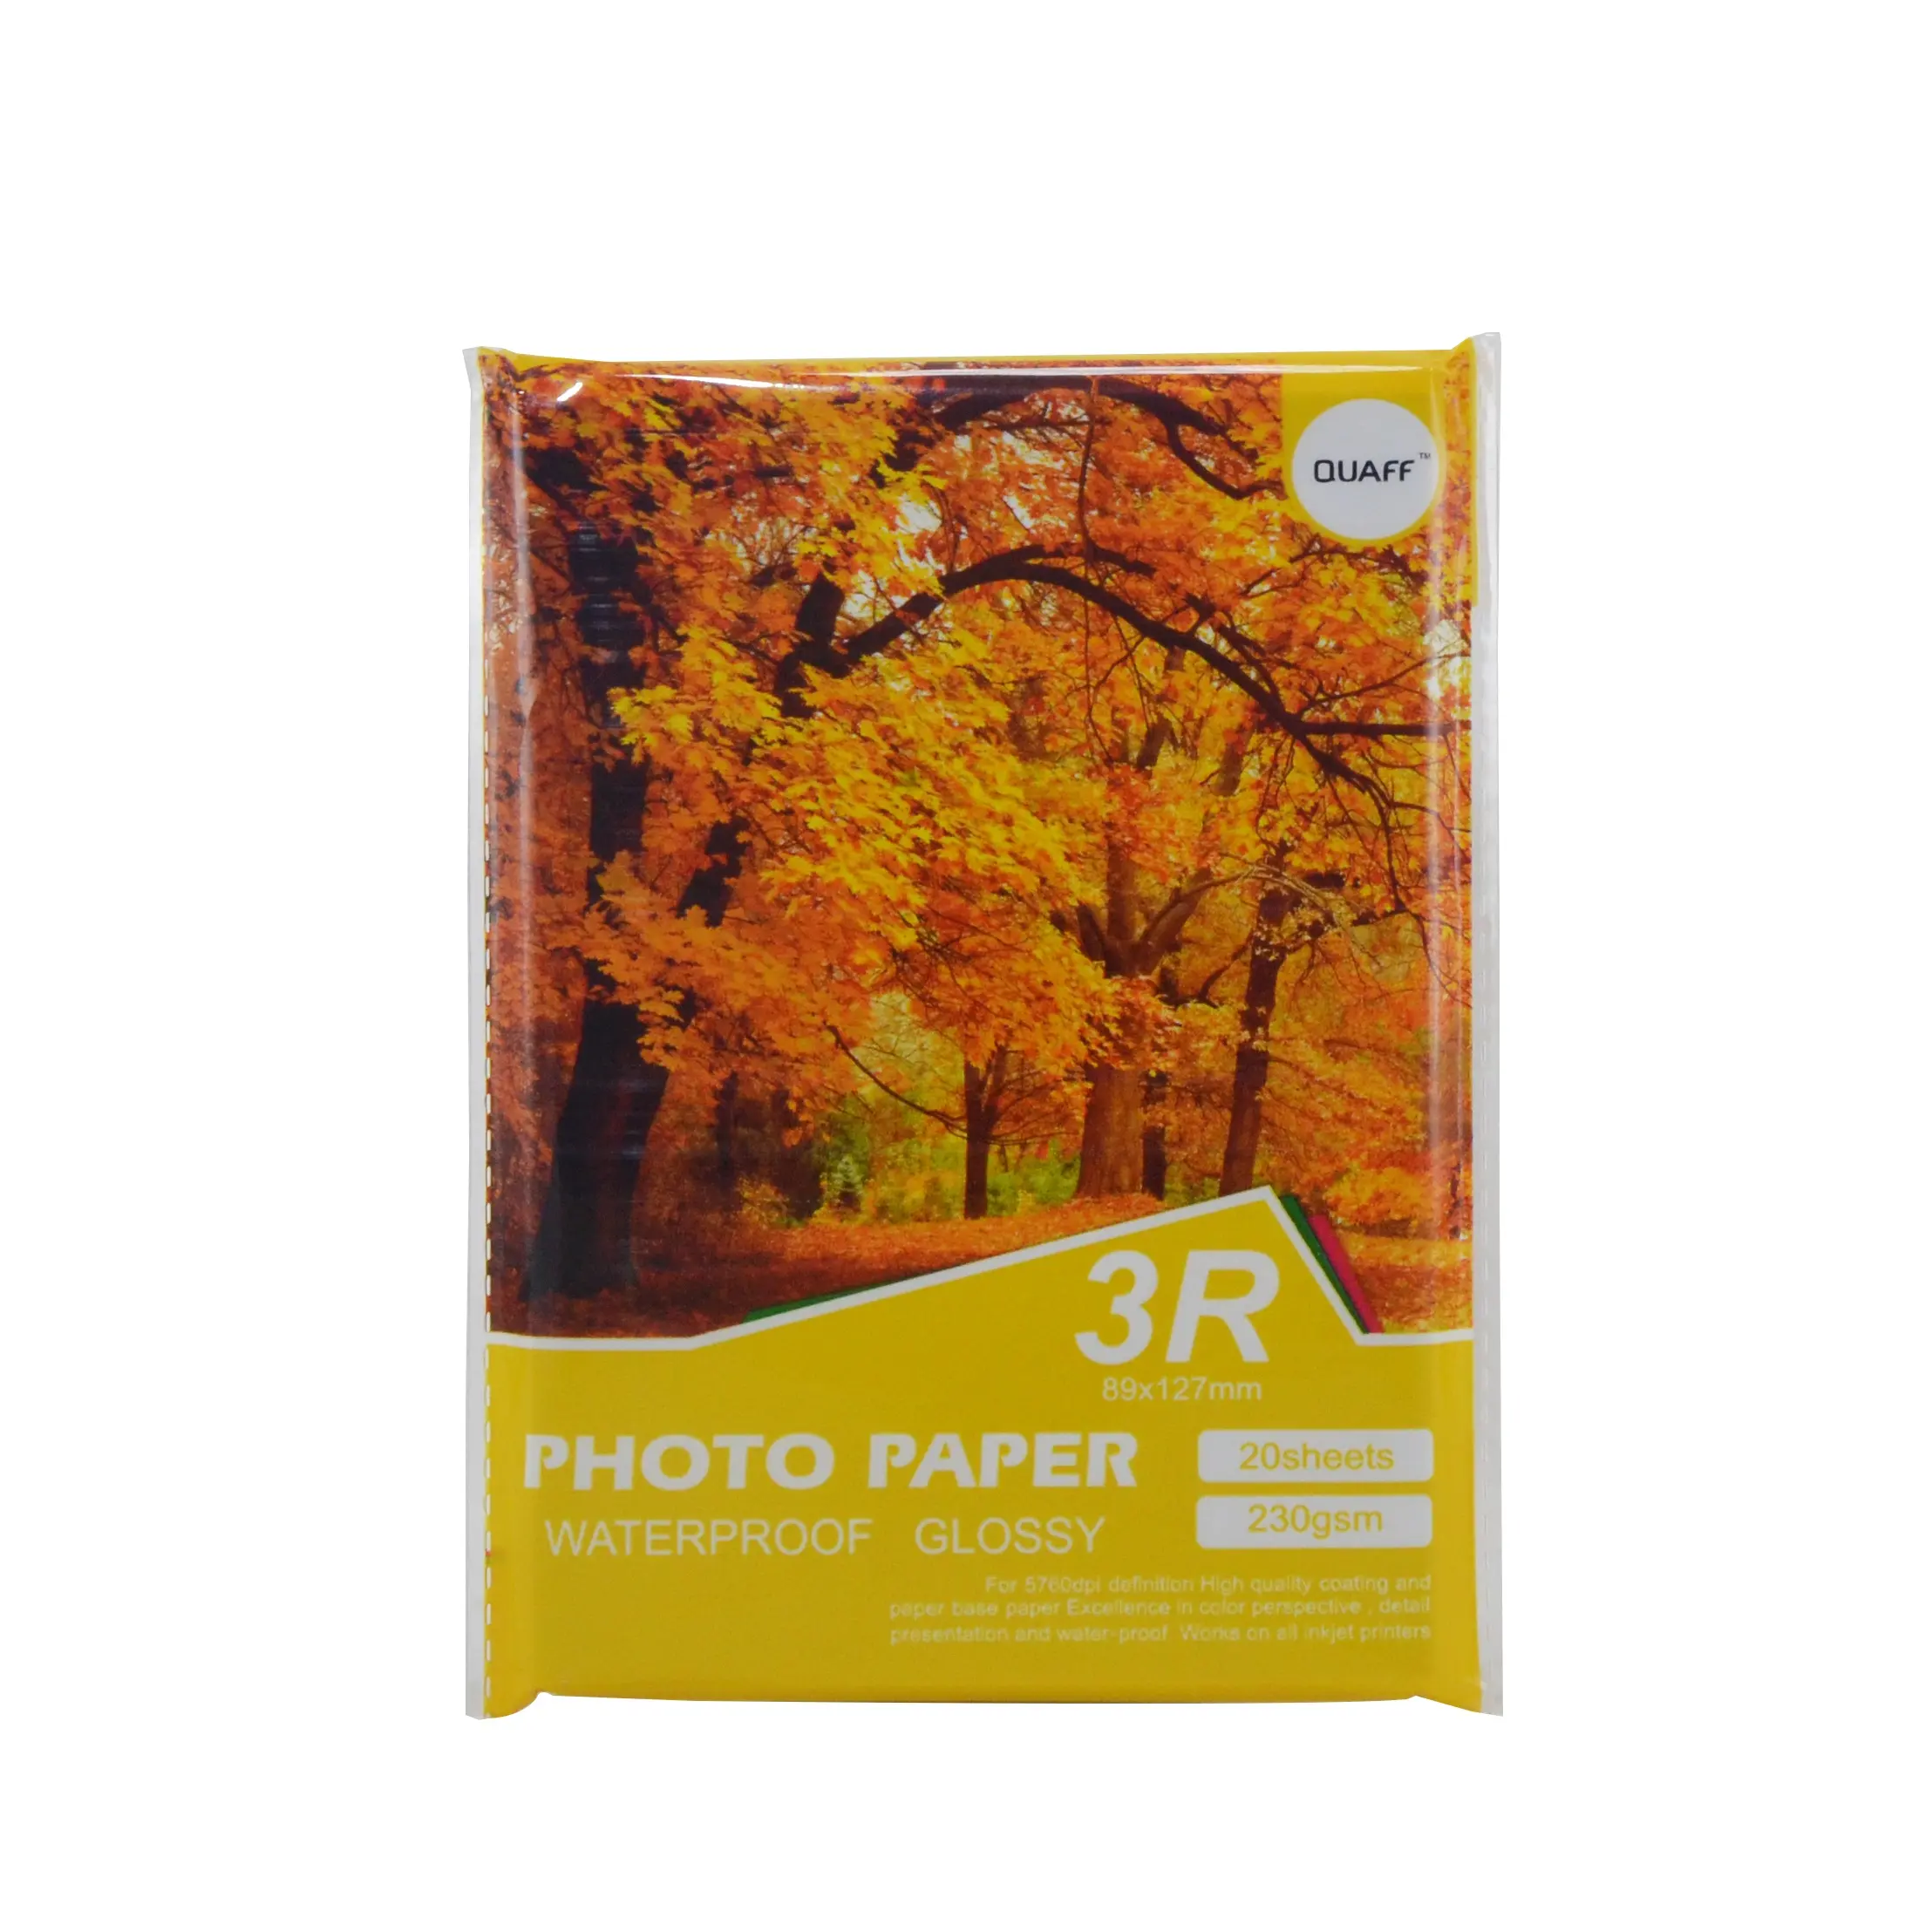 QUAFF ucuz pazarı toptan mürekkep püskürtmeli fotoğraf kağıdı fotoğraf kağıdı 230 Gsm ağaç tipi arka baskı 3R